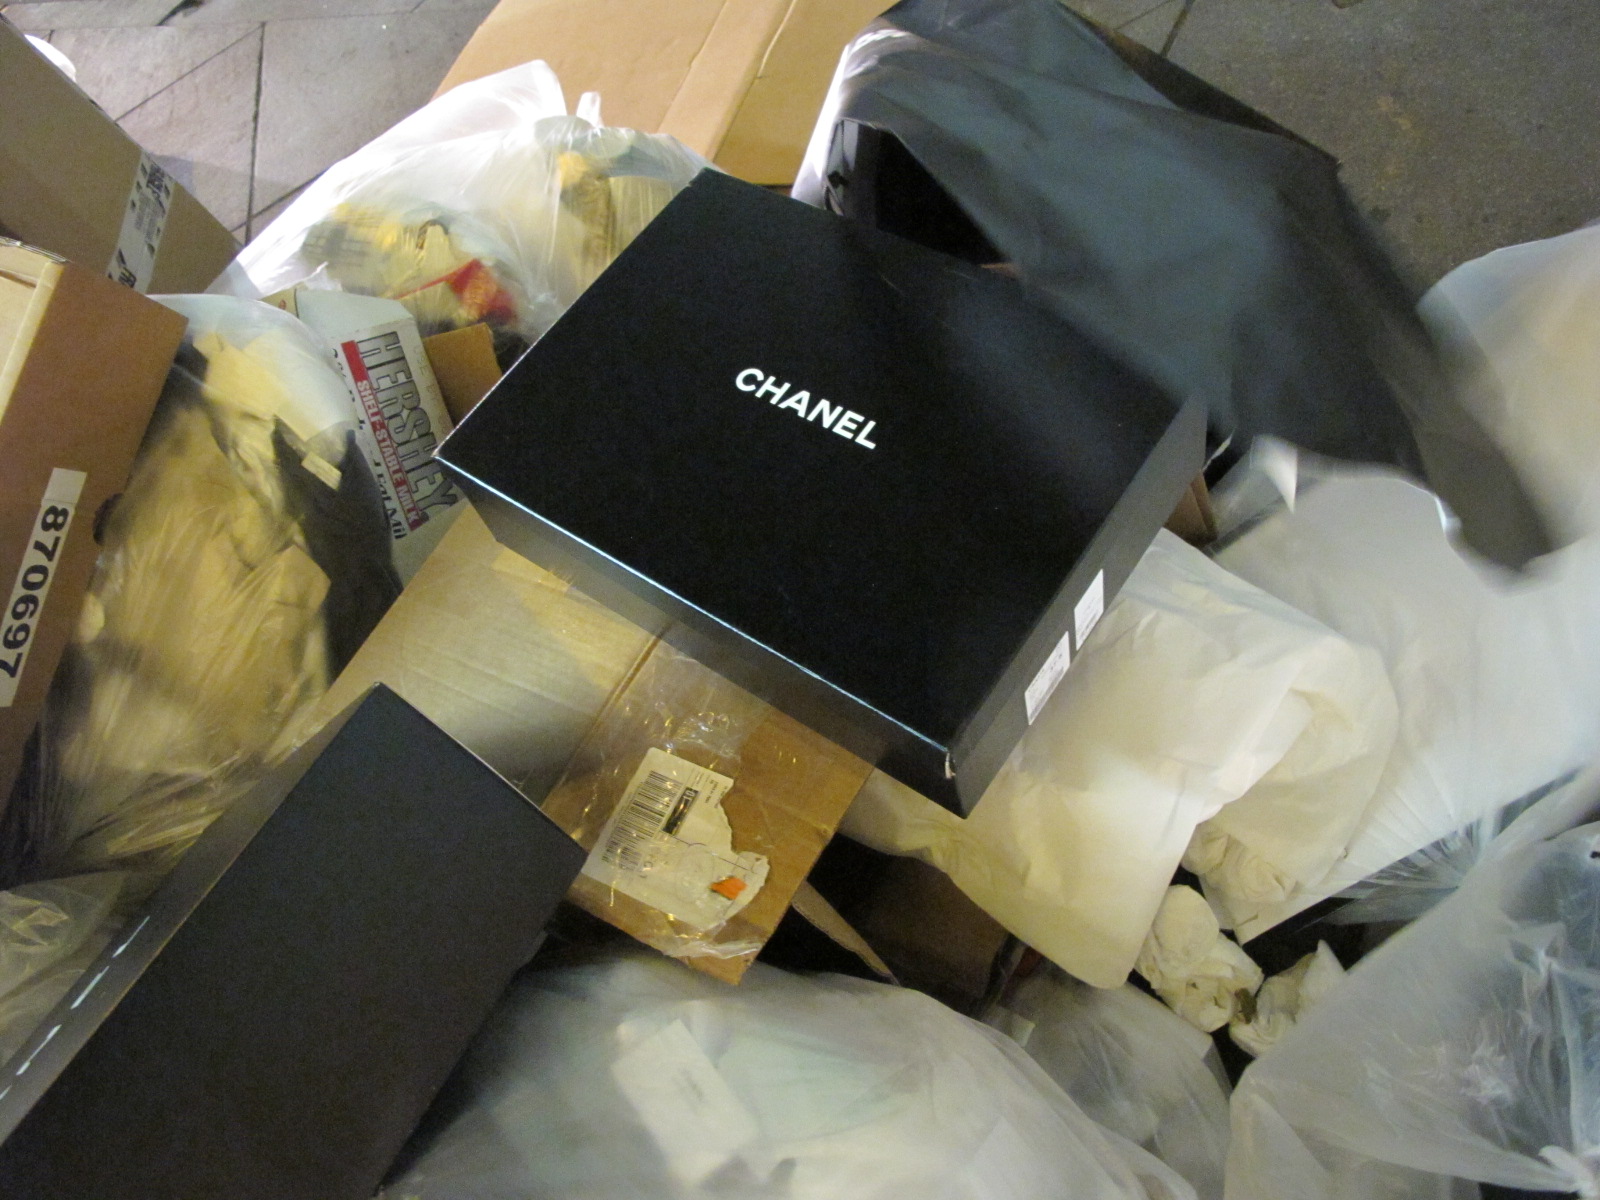  Trash at Chanel